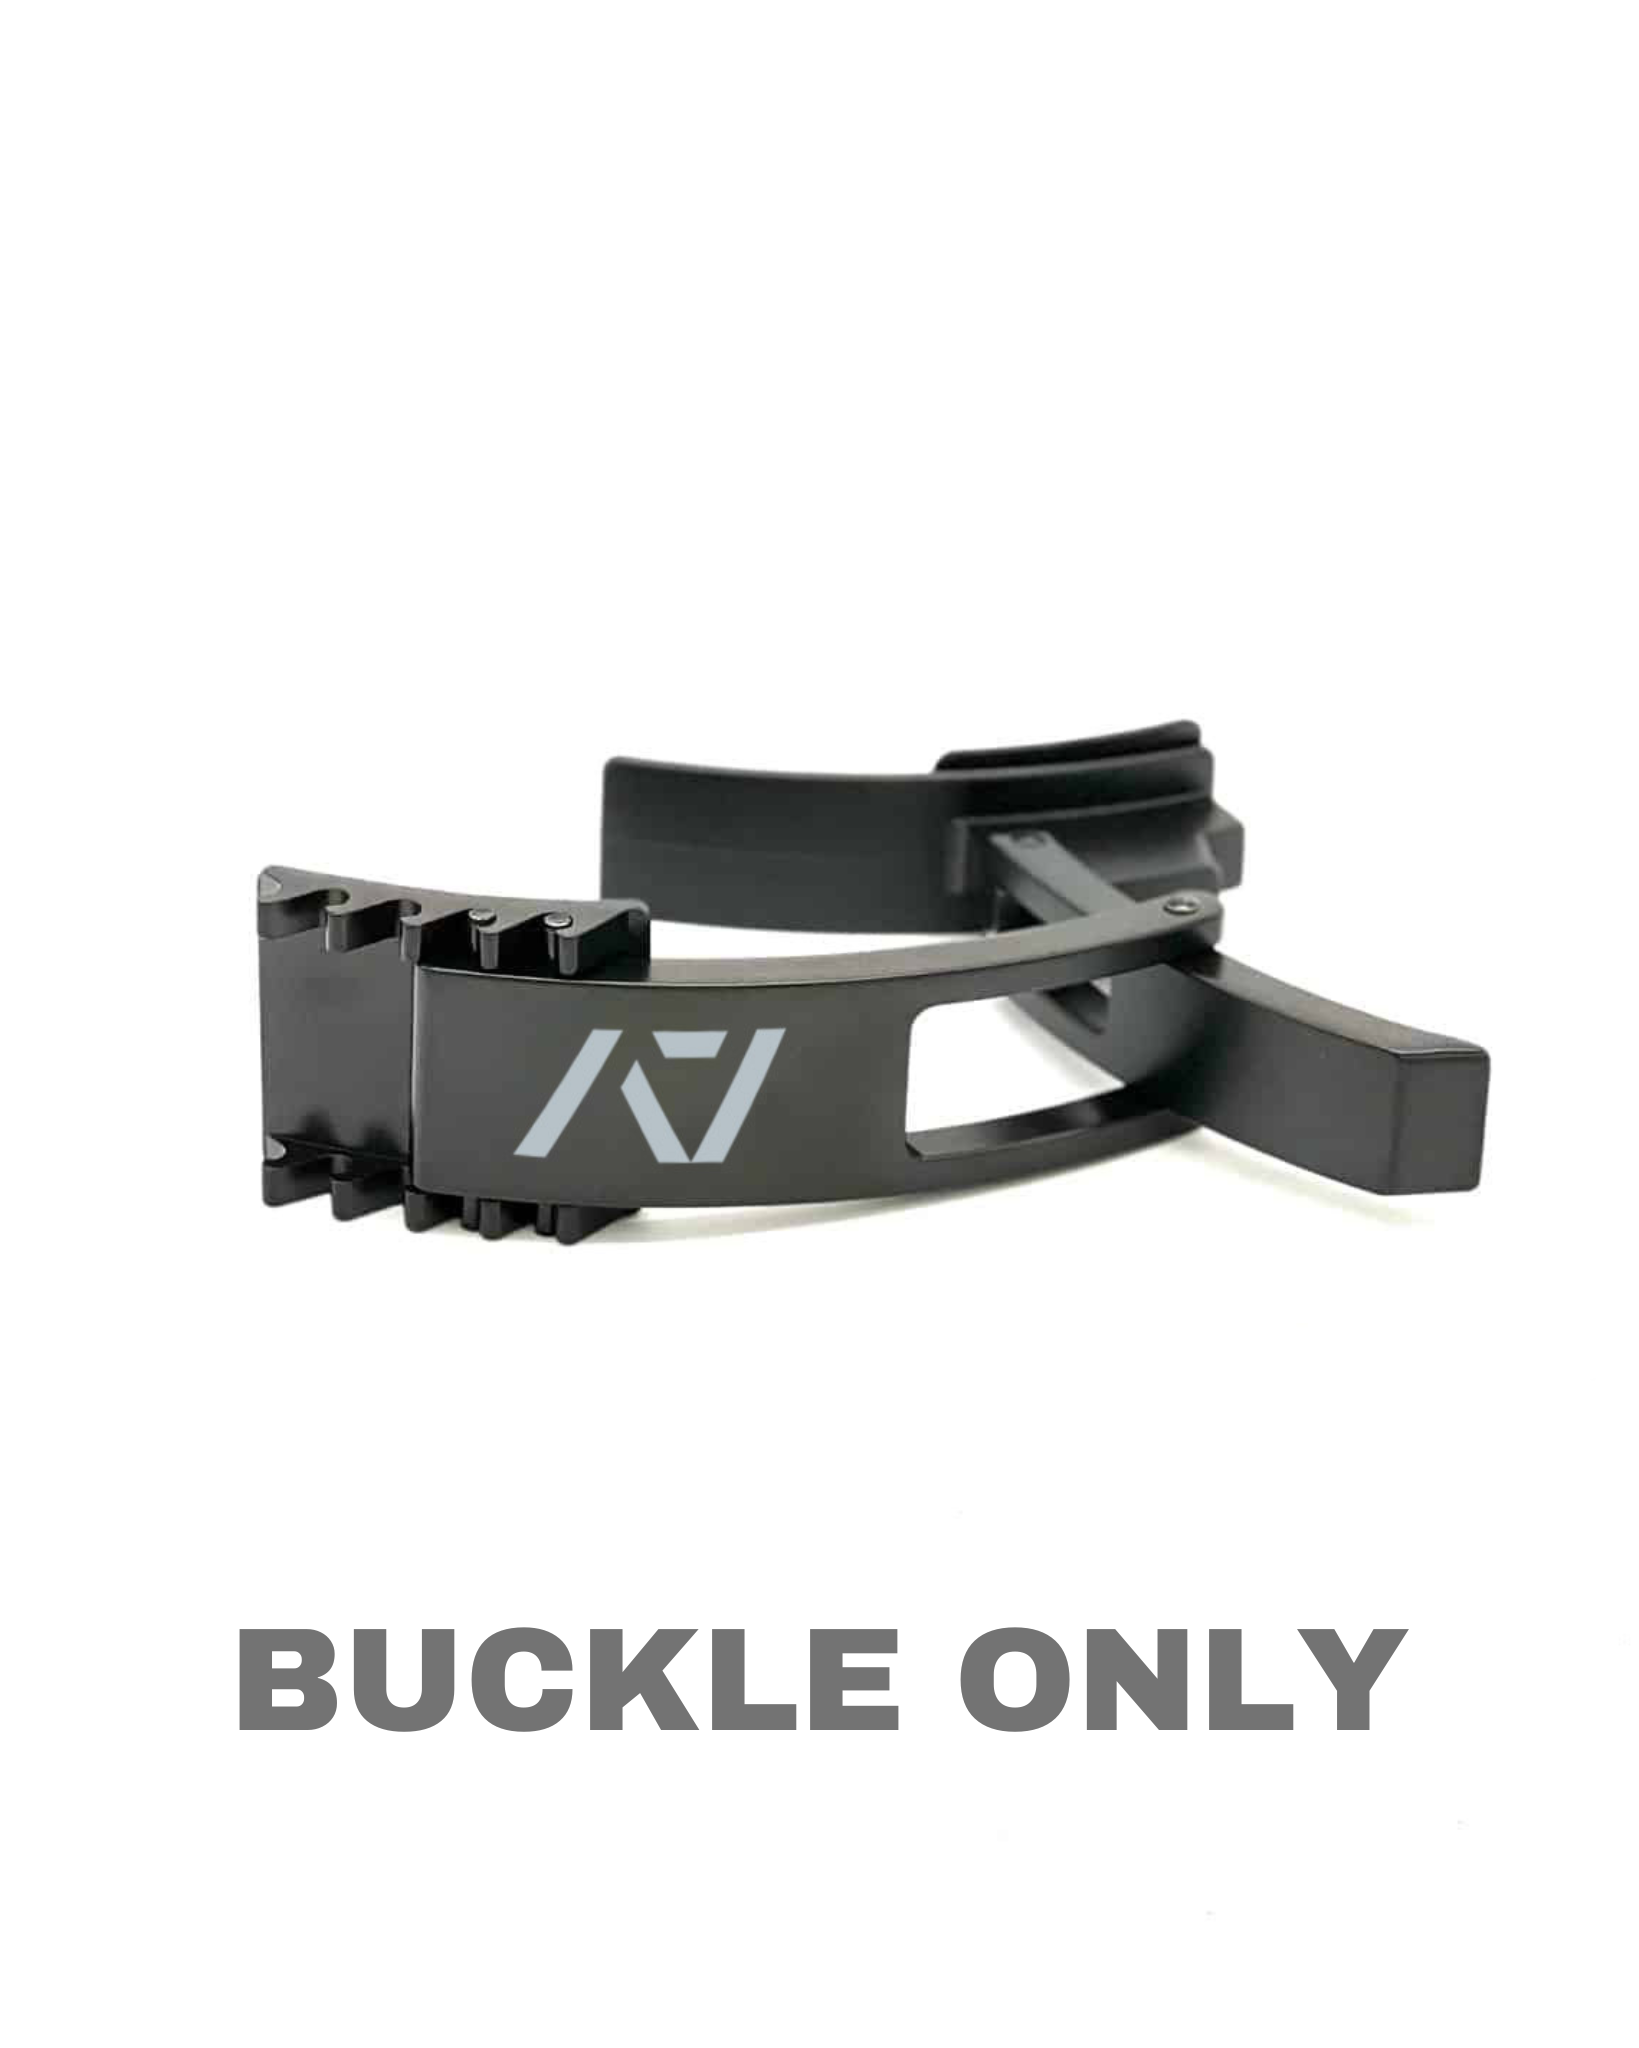 A7 PAL Buckle - Black | Pioneer Adjustable Lever Powerlifting Belt ...